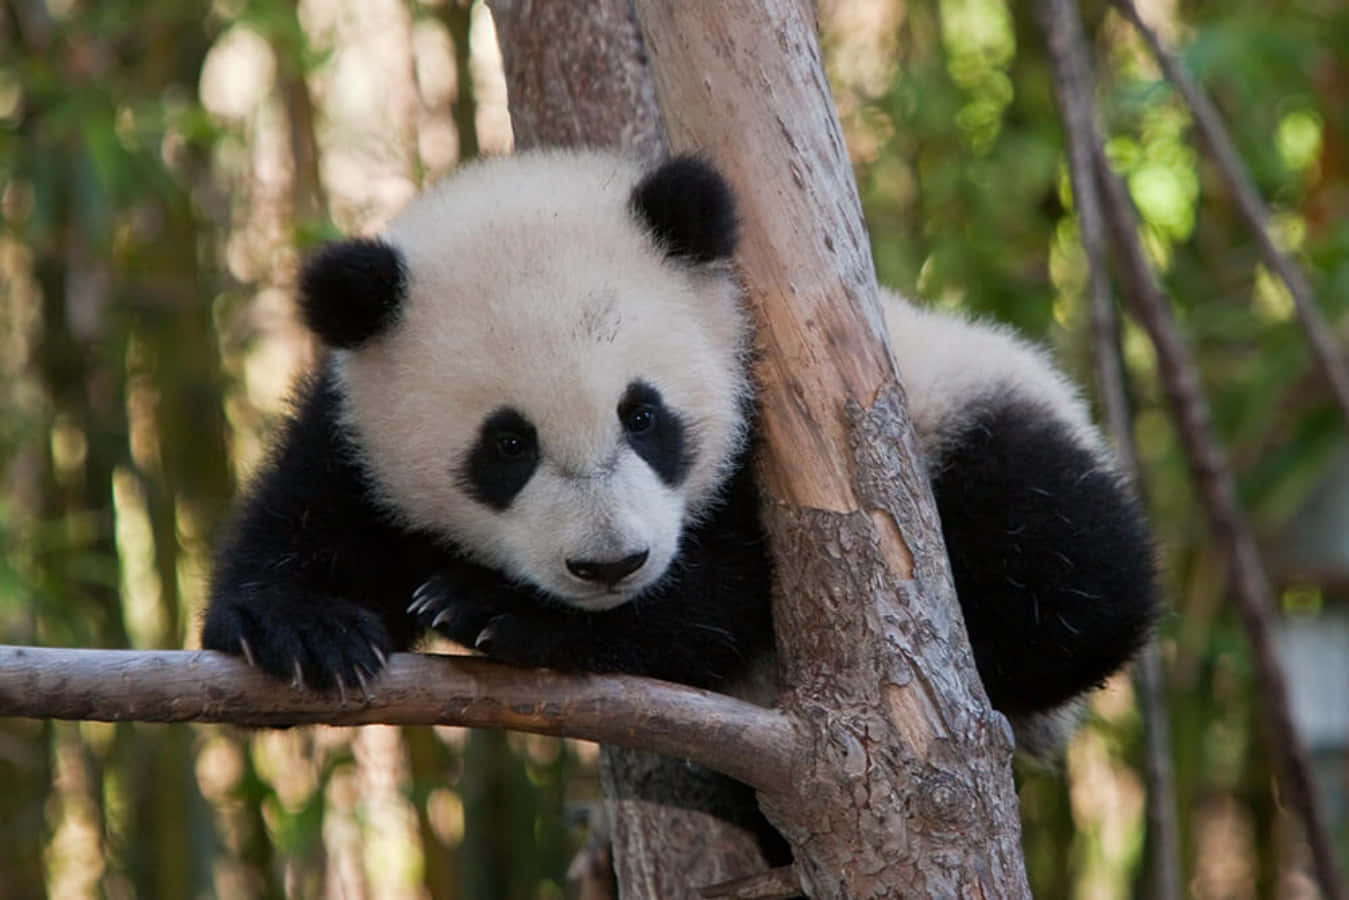 “Endangered Giant Panda Bears Enjoying Their Natural Habitat in China”